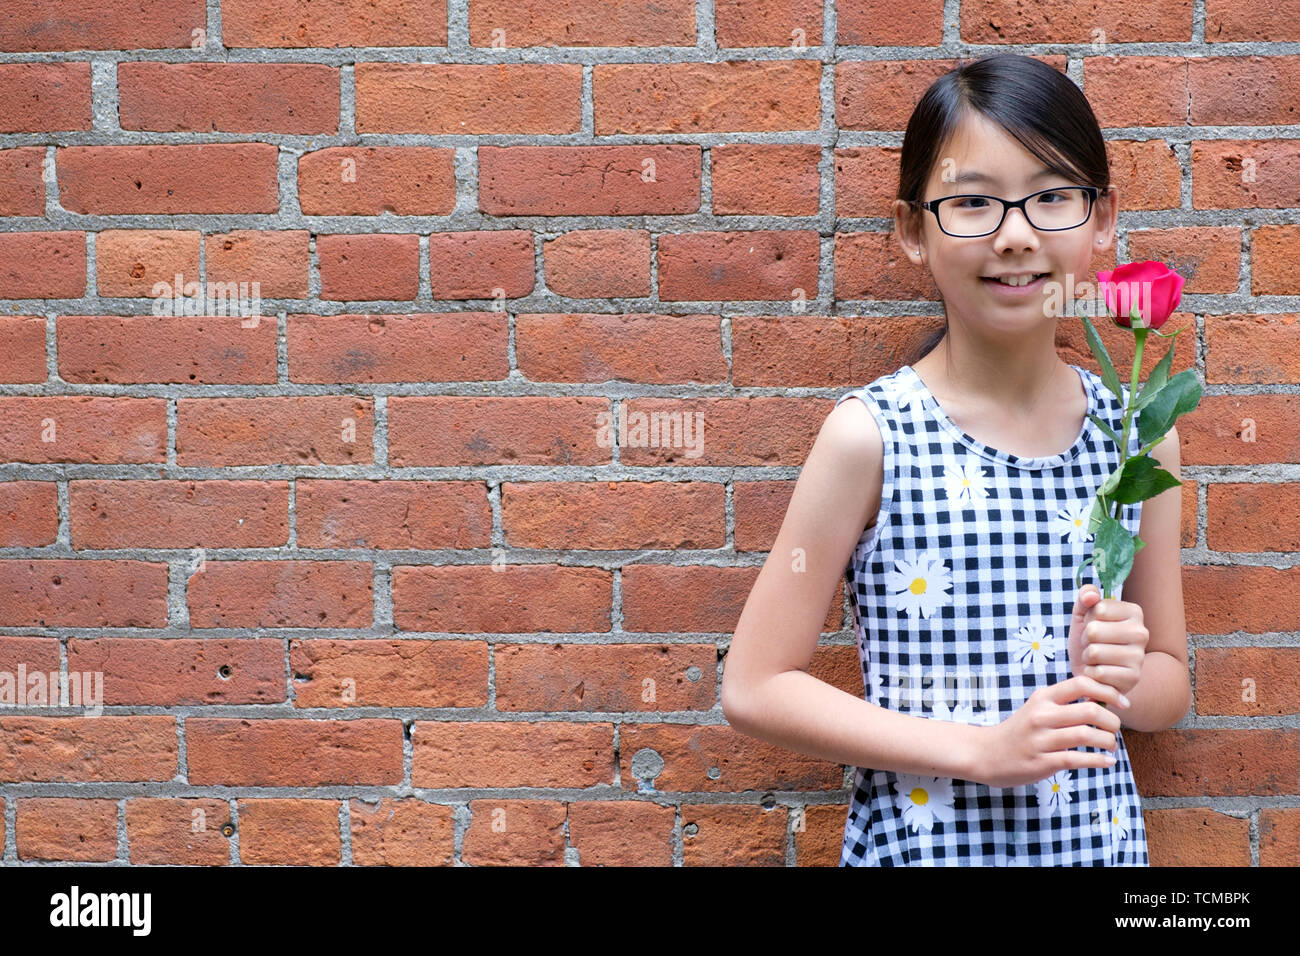 Portrait de jeune fille asiatique avec fleur rose rouge contre le mur de brique rouge Banque D'Images